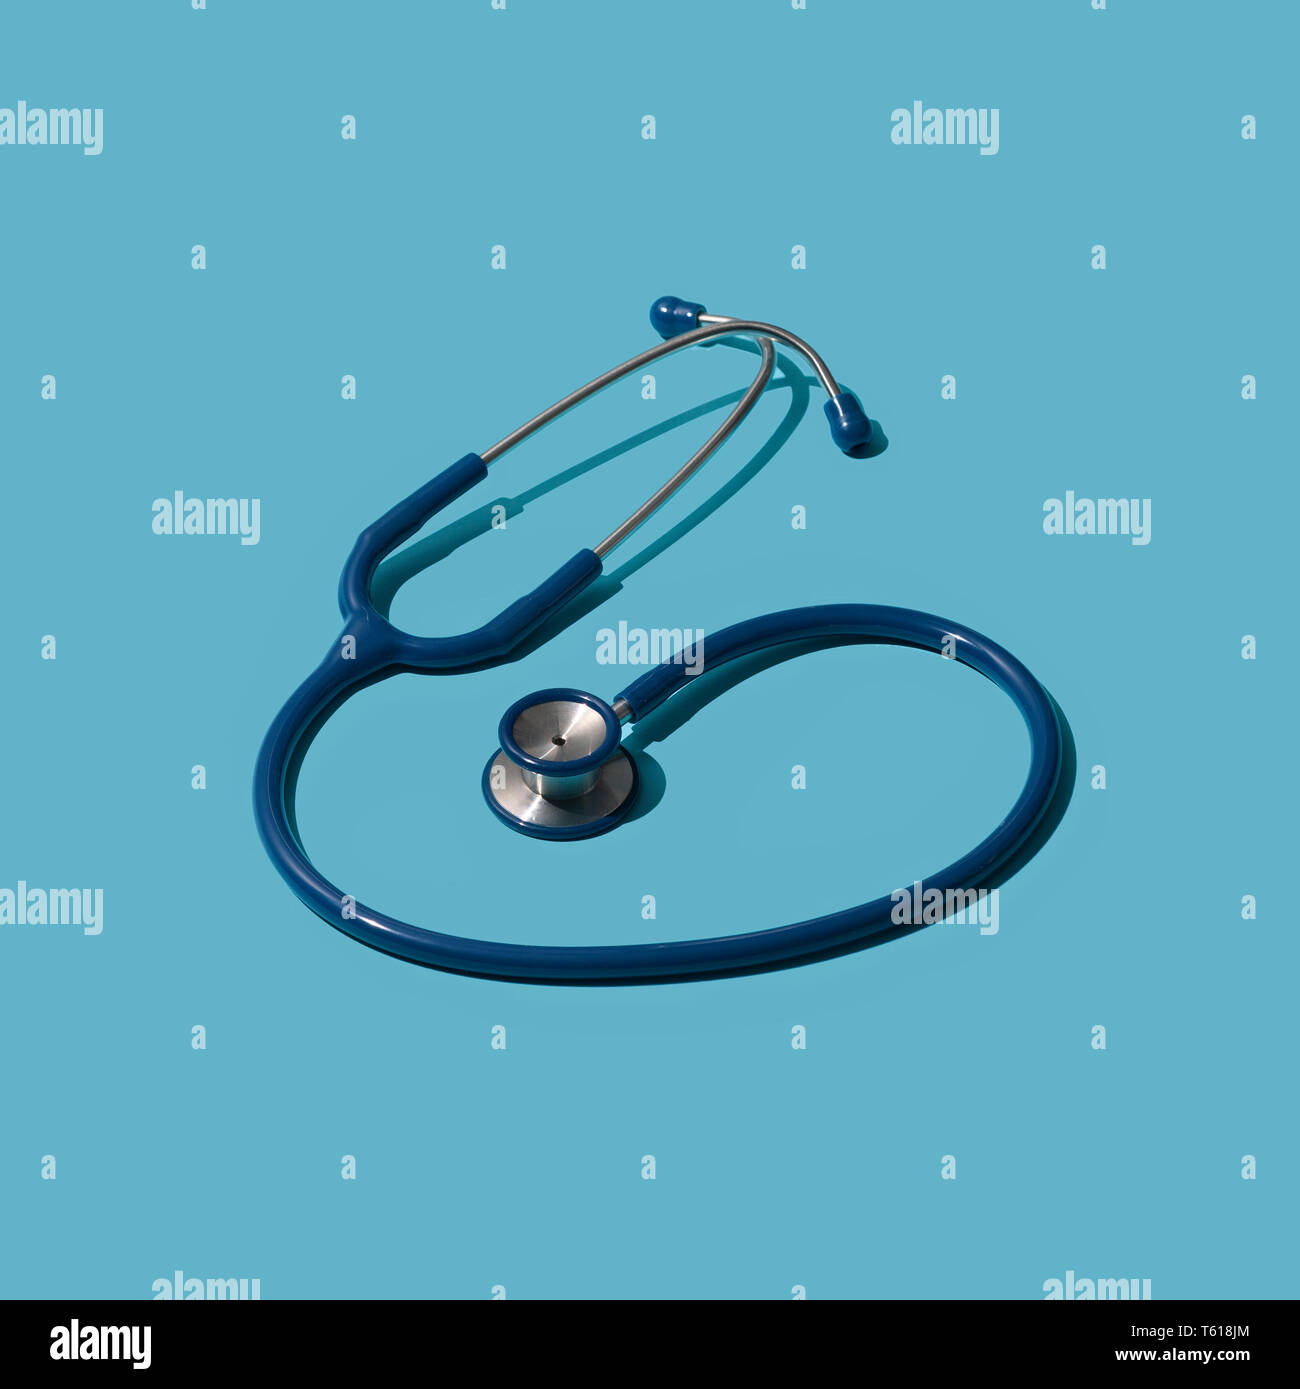 Medizinische Stethoskop für auskultation: Gesundheitswesen, Medizin und Diagnostik Konzept Stockfoto